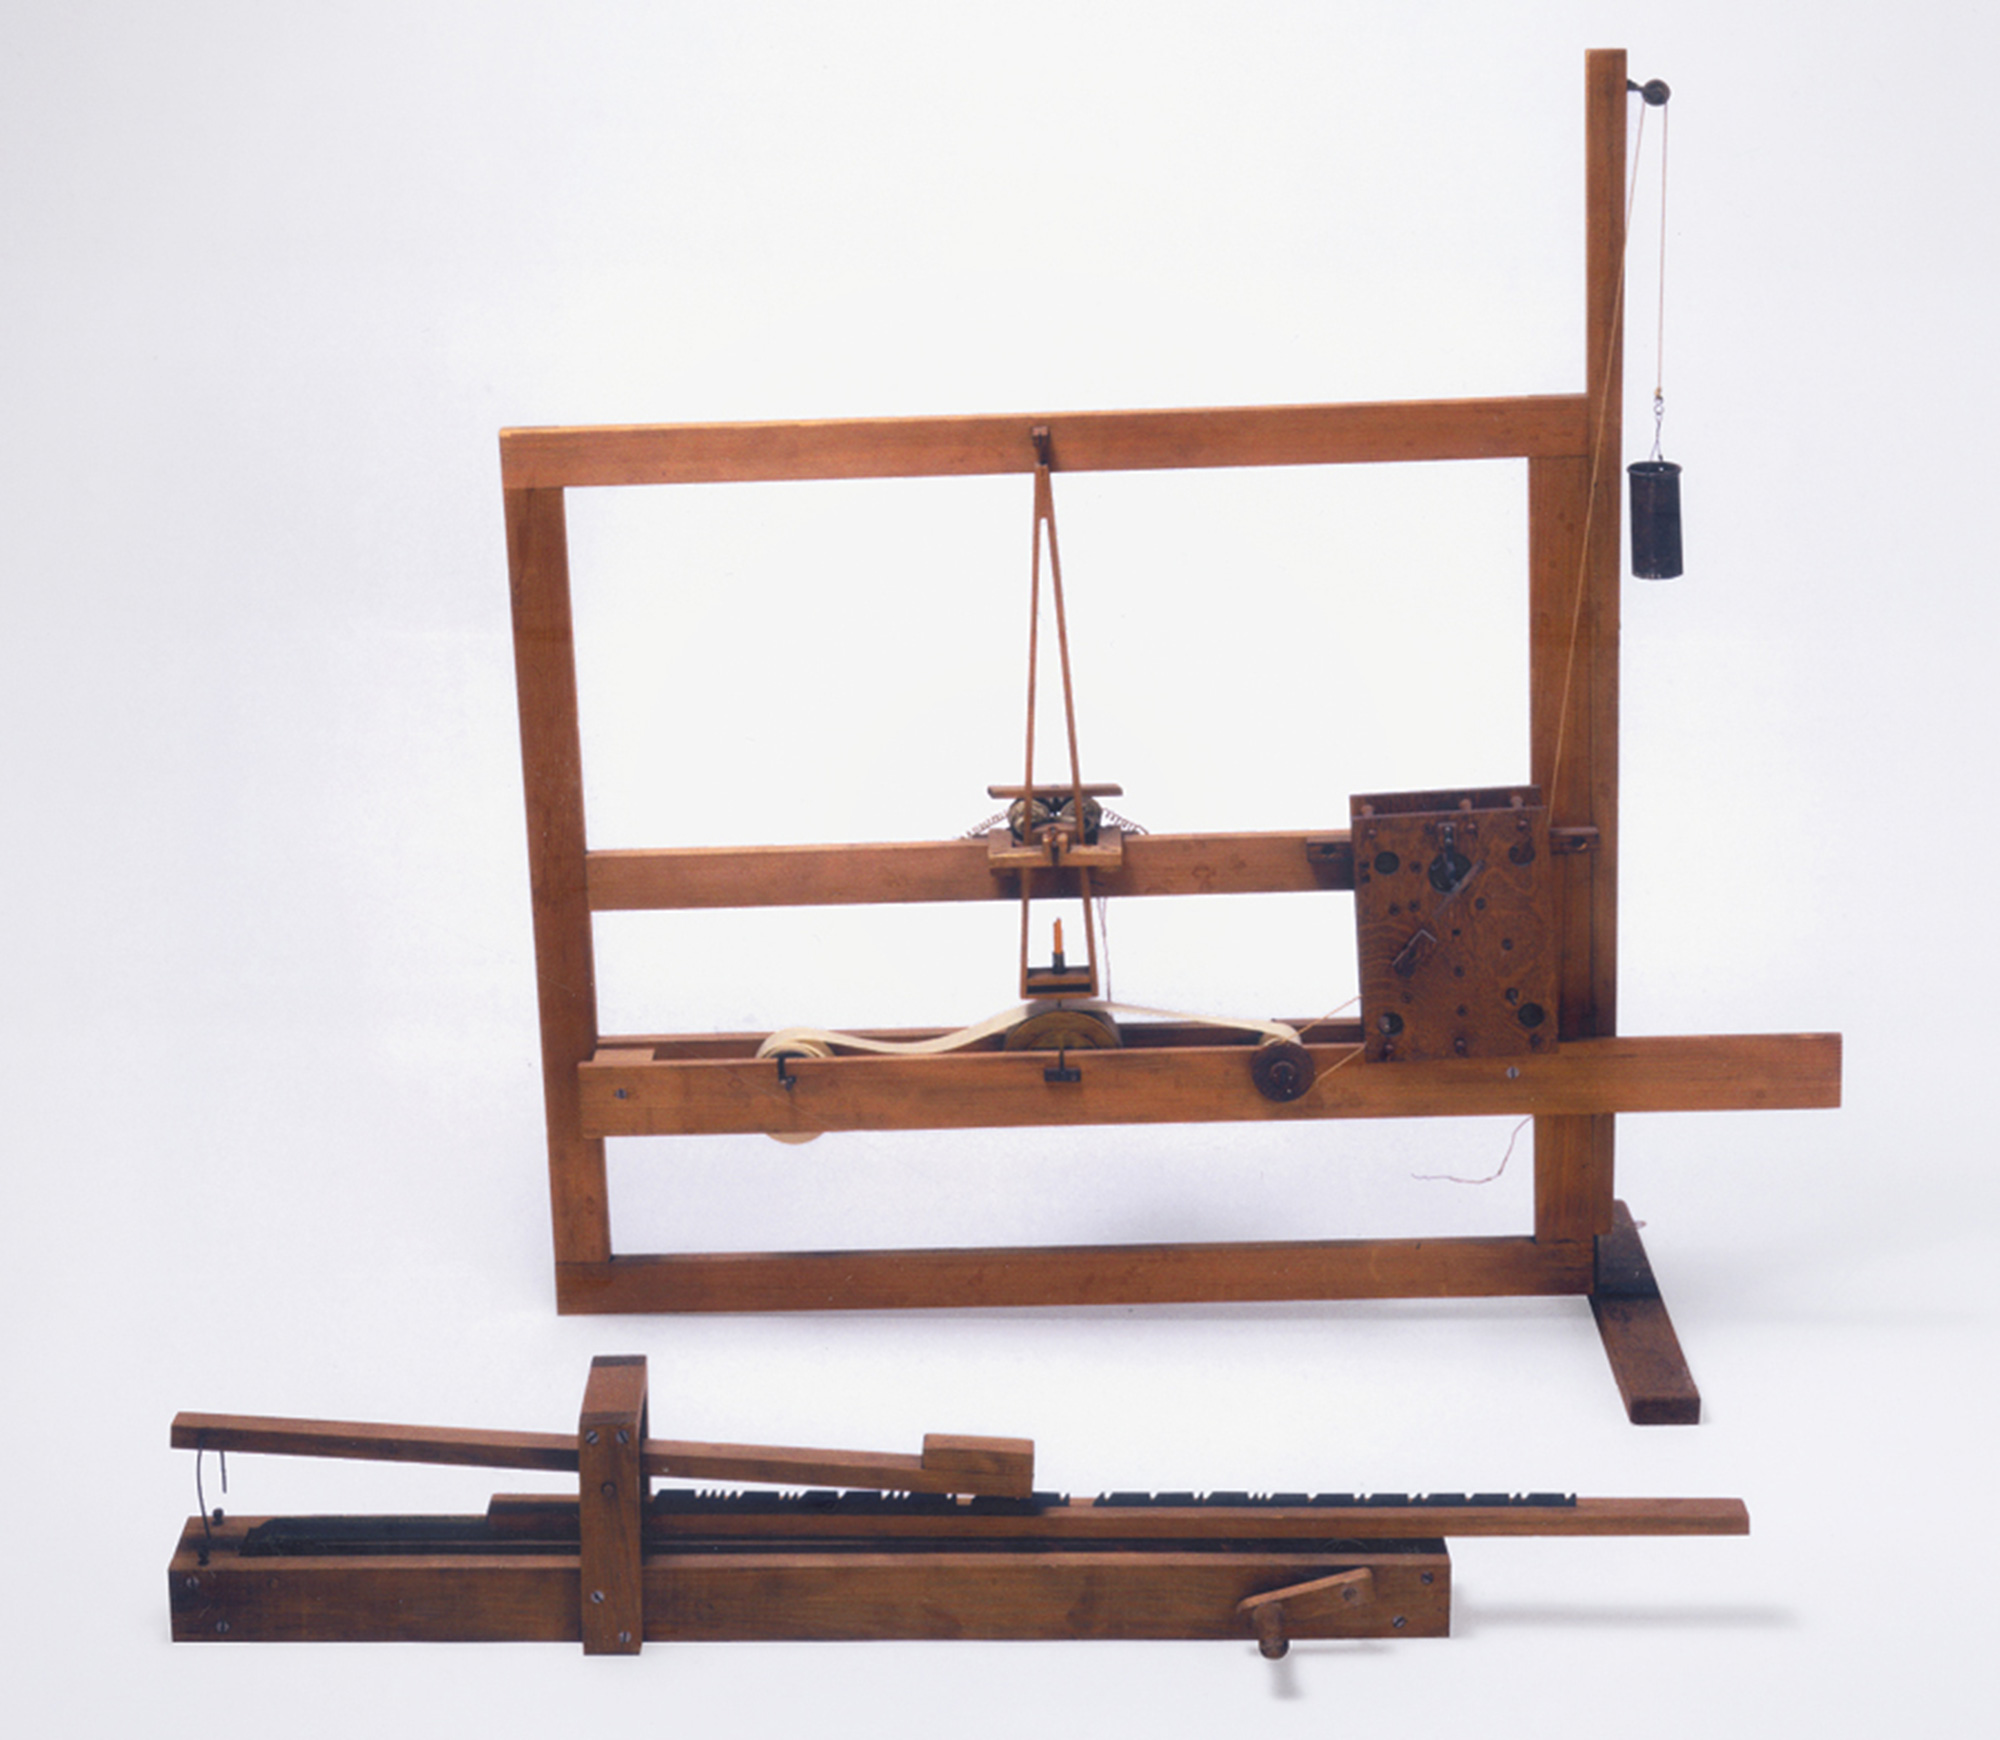 Replica of Morse’s first telegraphic device, ca. 1835.